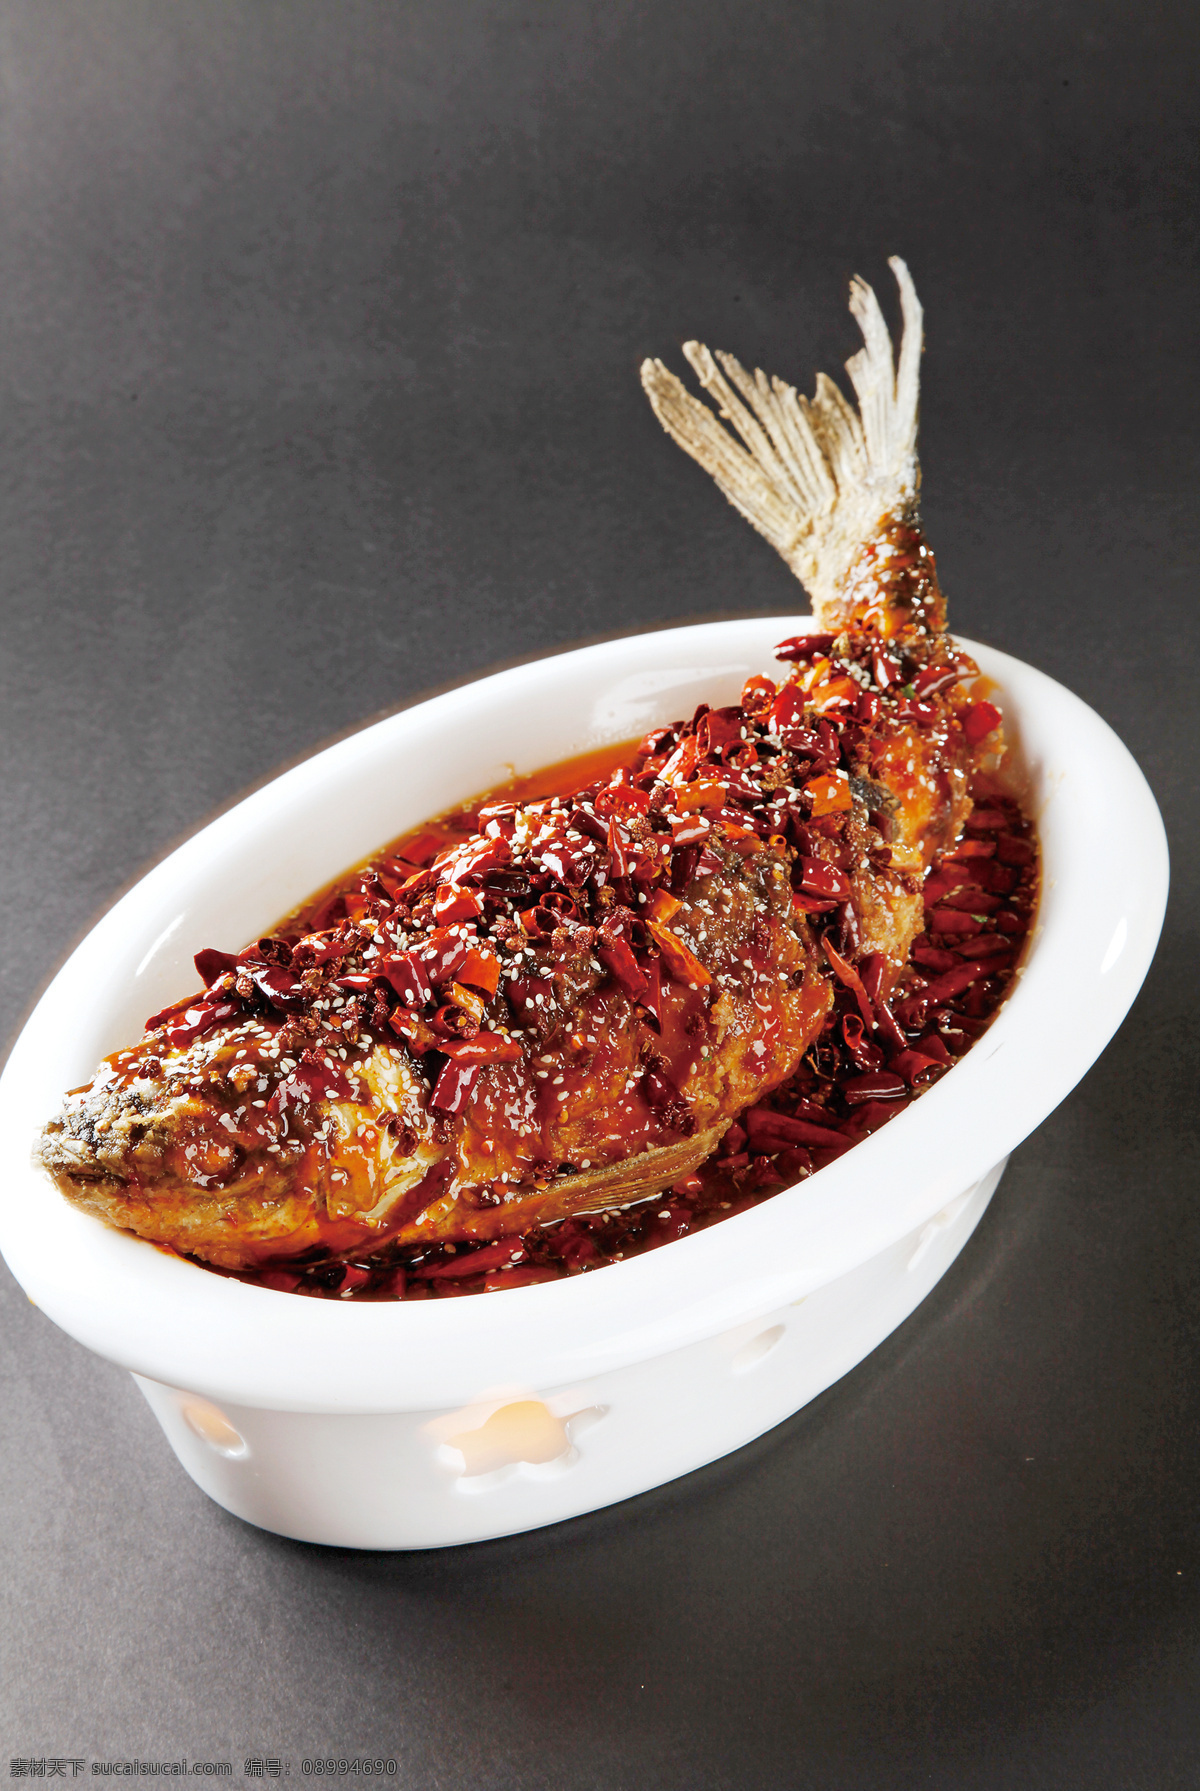 望江辣子鱼 美食 传统美食 餐饮美食 高清菜谱用图